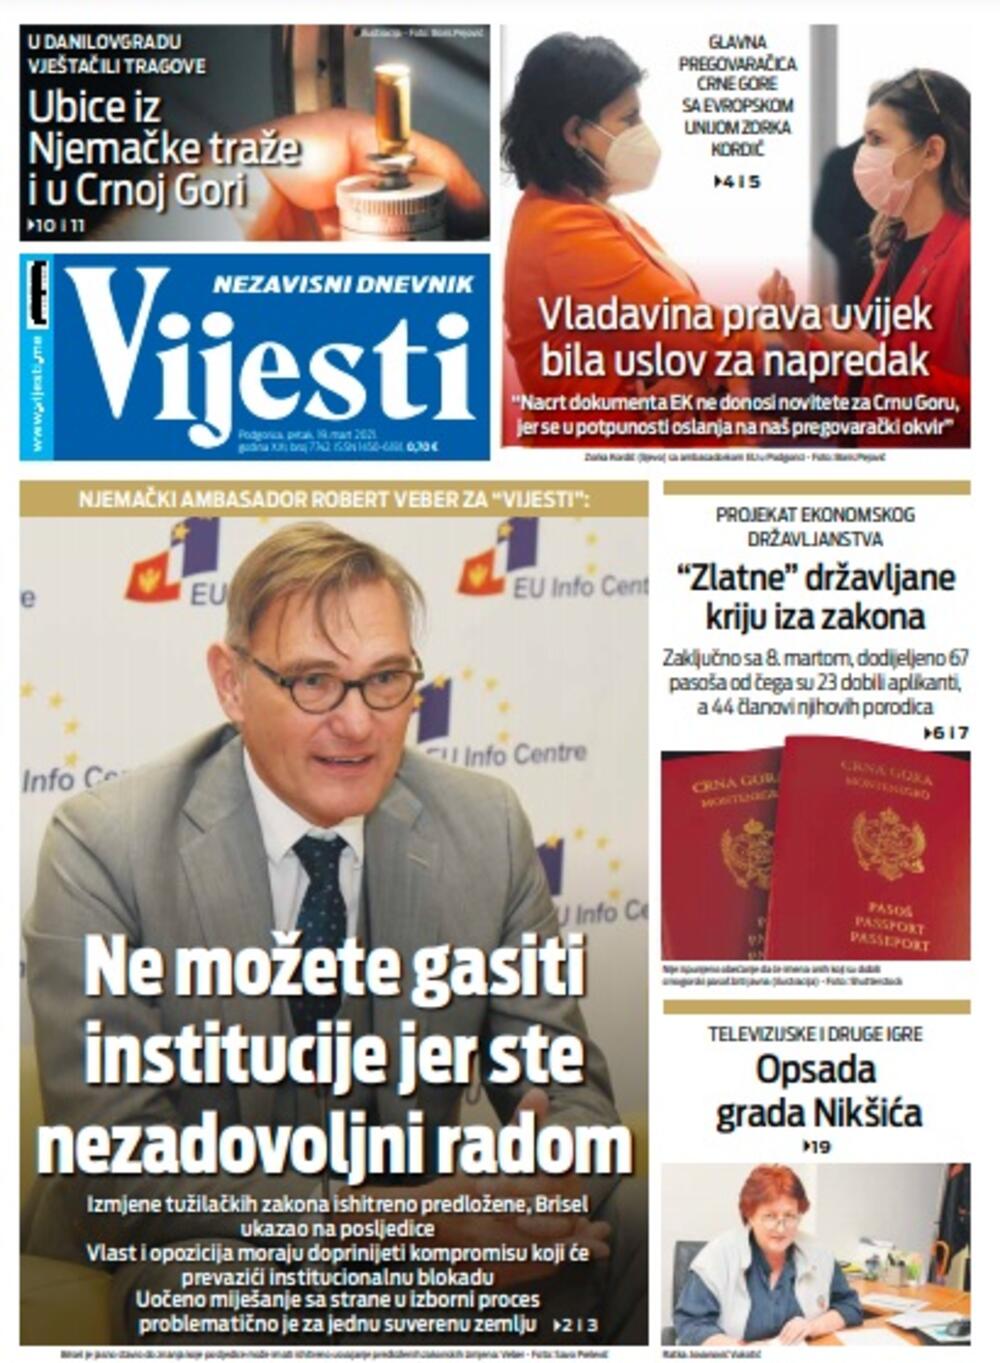 Naslovna strana "Vijesti" za petak 19. mart 2021. godine, Foto: Vijesti